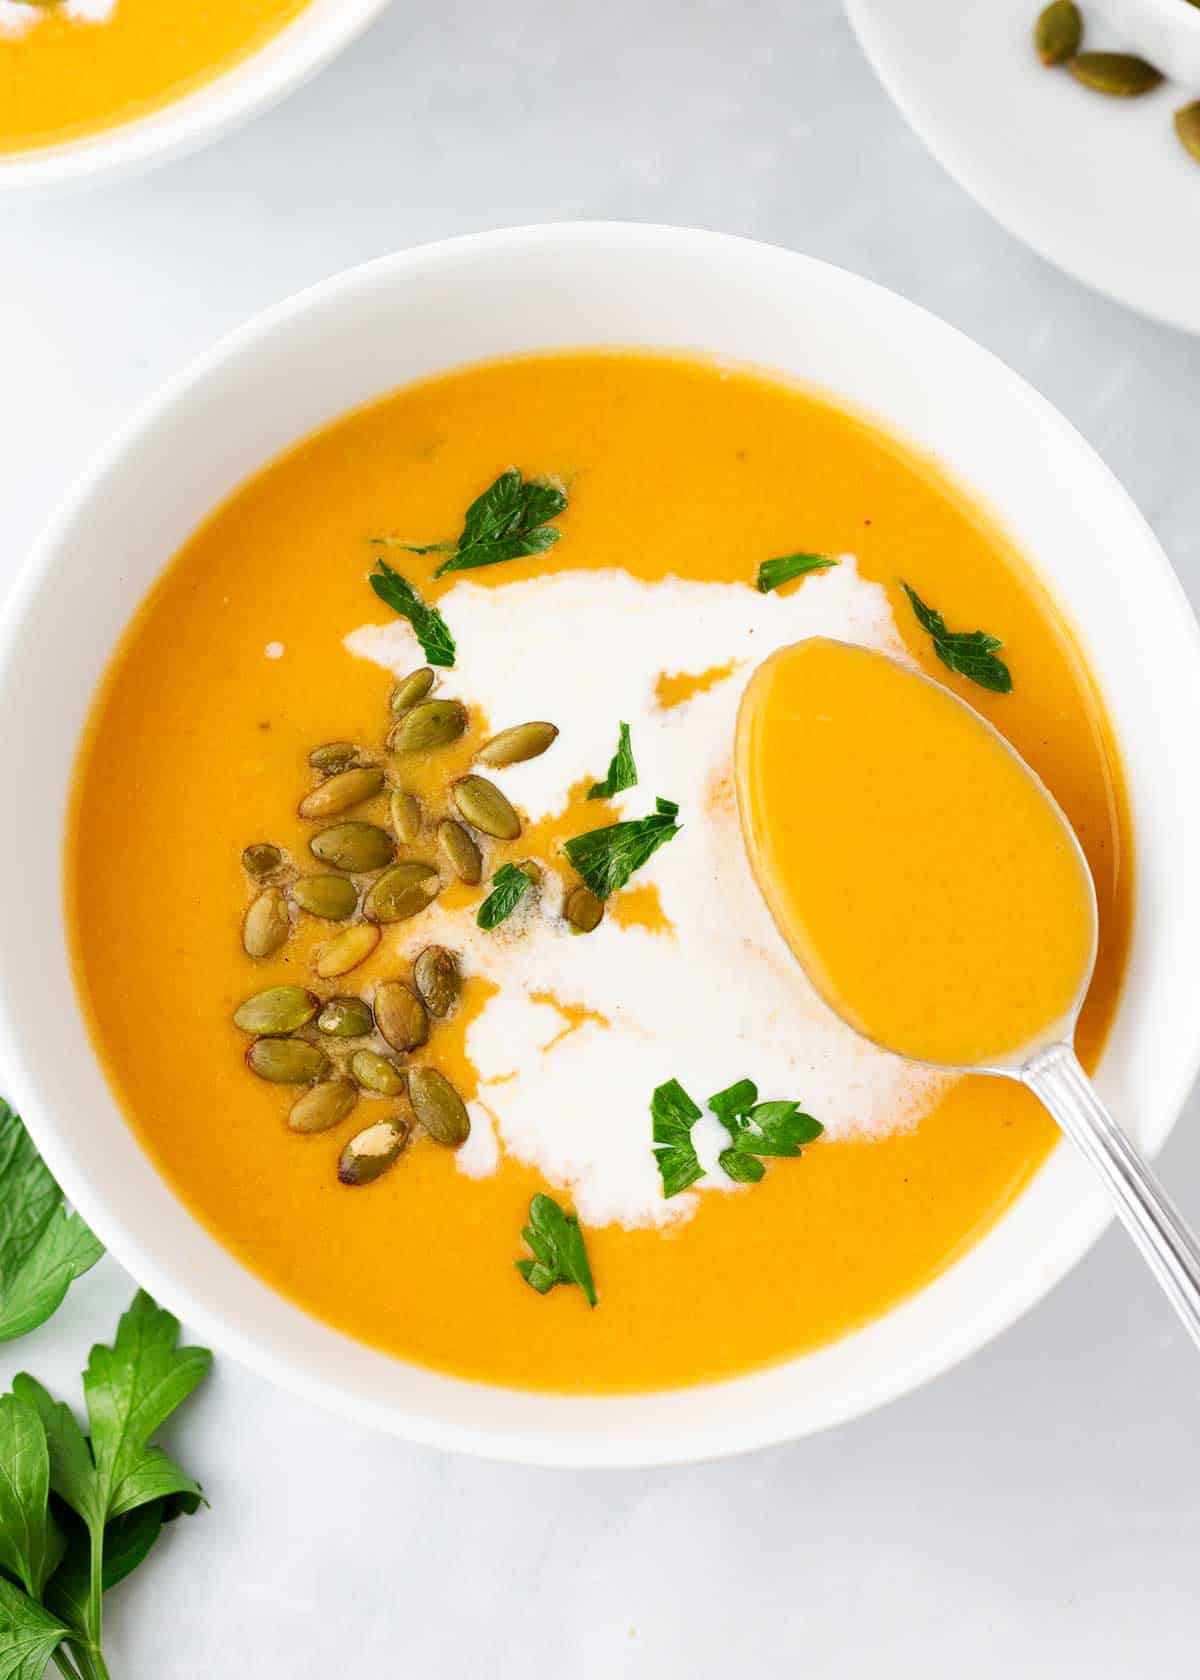 Sweet potato soup in a white bowl.